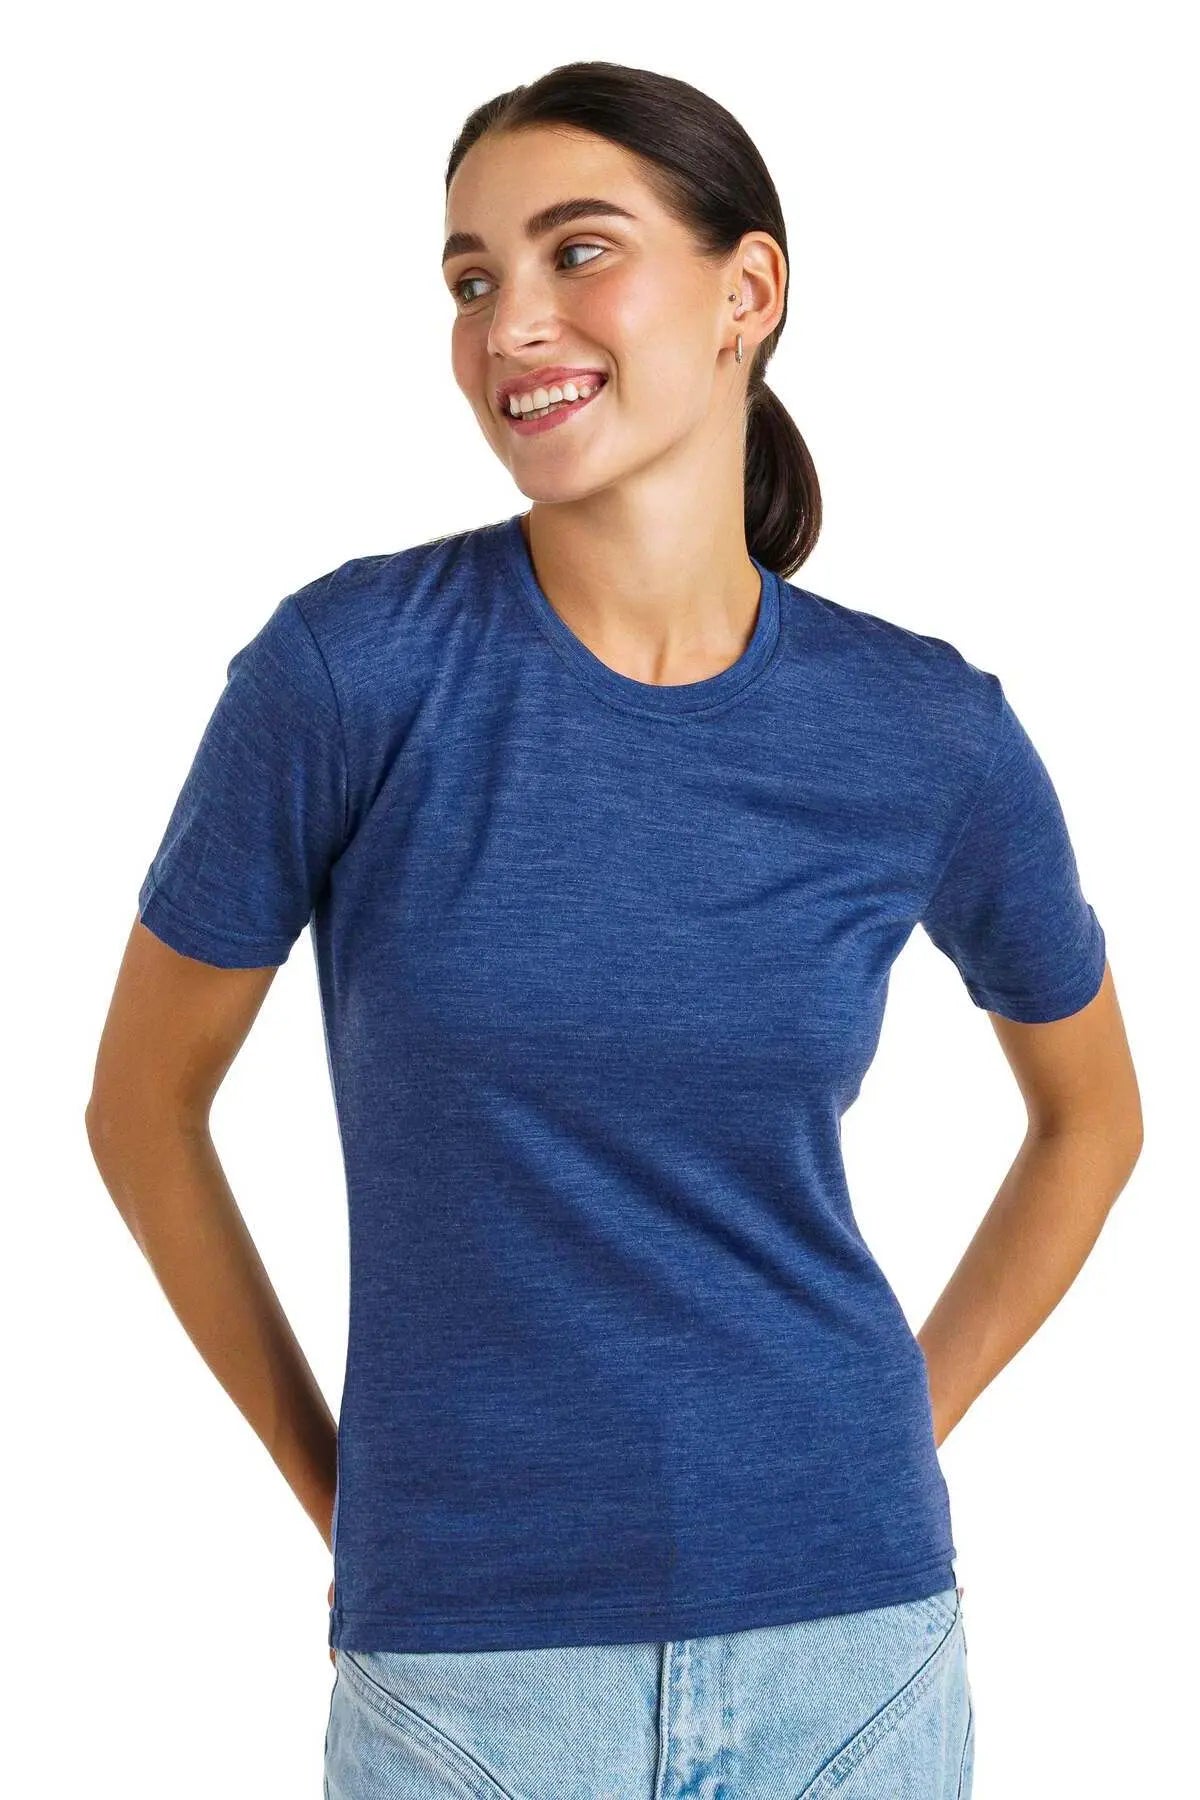 Premium Women's Merino Wool T-shirts for Everyday Comfort – Merino Tech